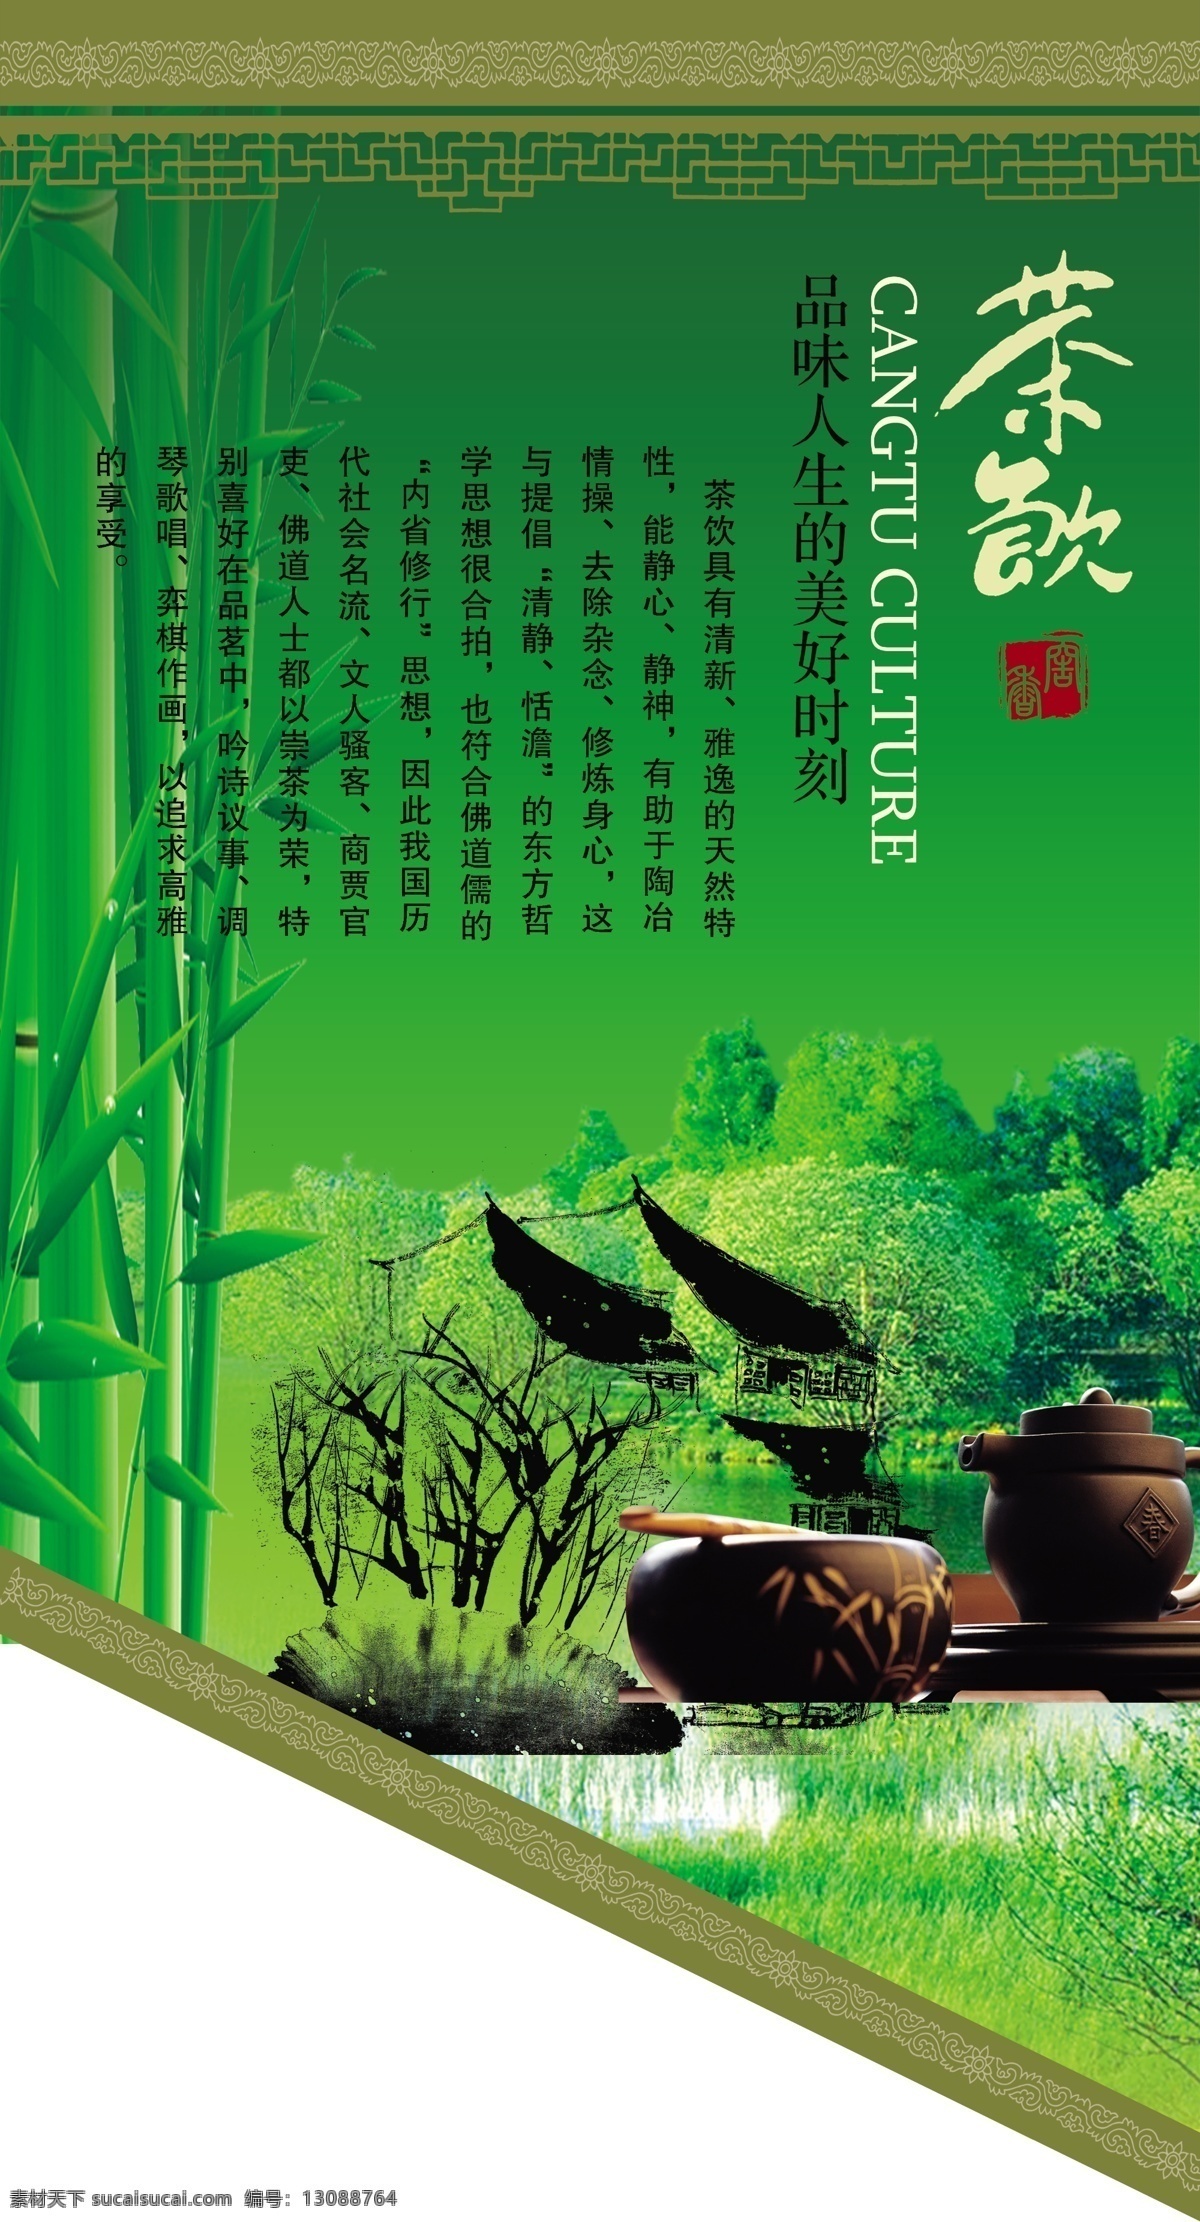 茶文化 展板 茶杯 茶文化展板 茶叶 广告设计模板 源文件 展板模板 竹子 茶田 其他展板设计